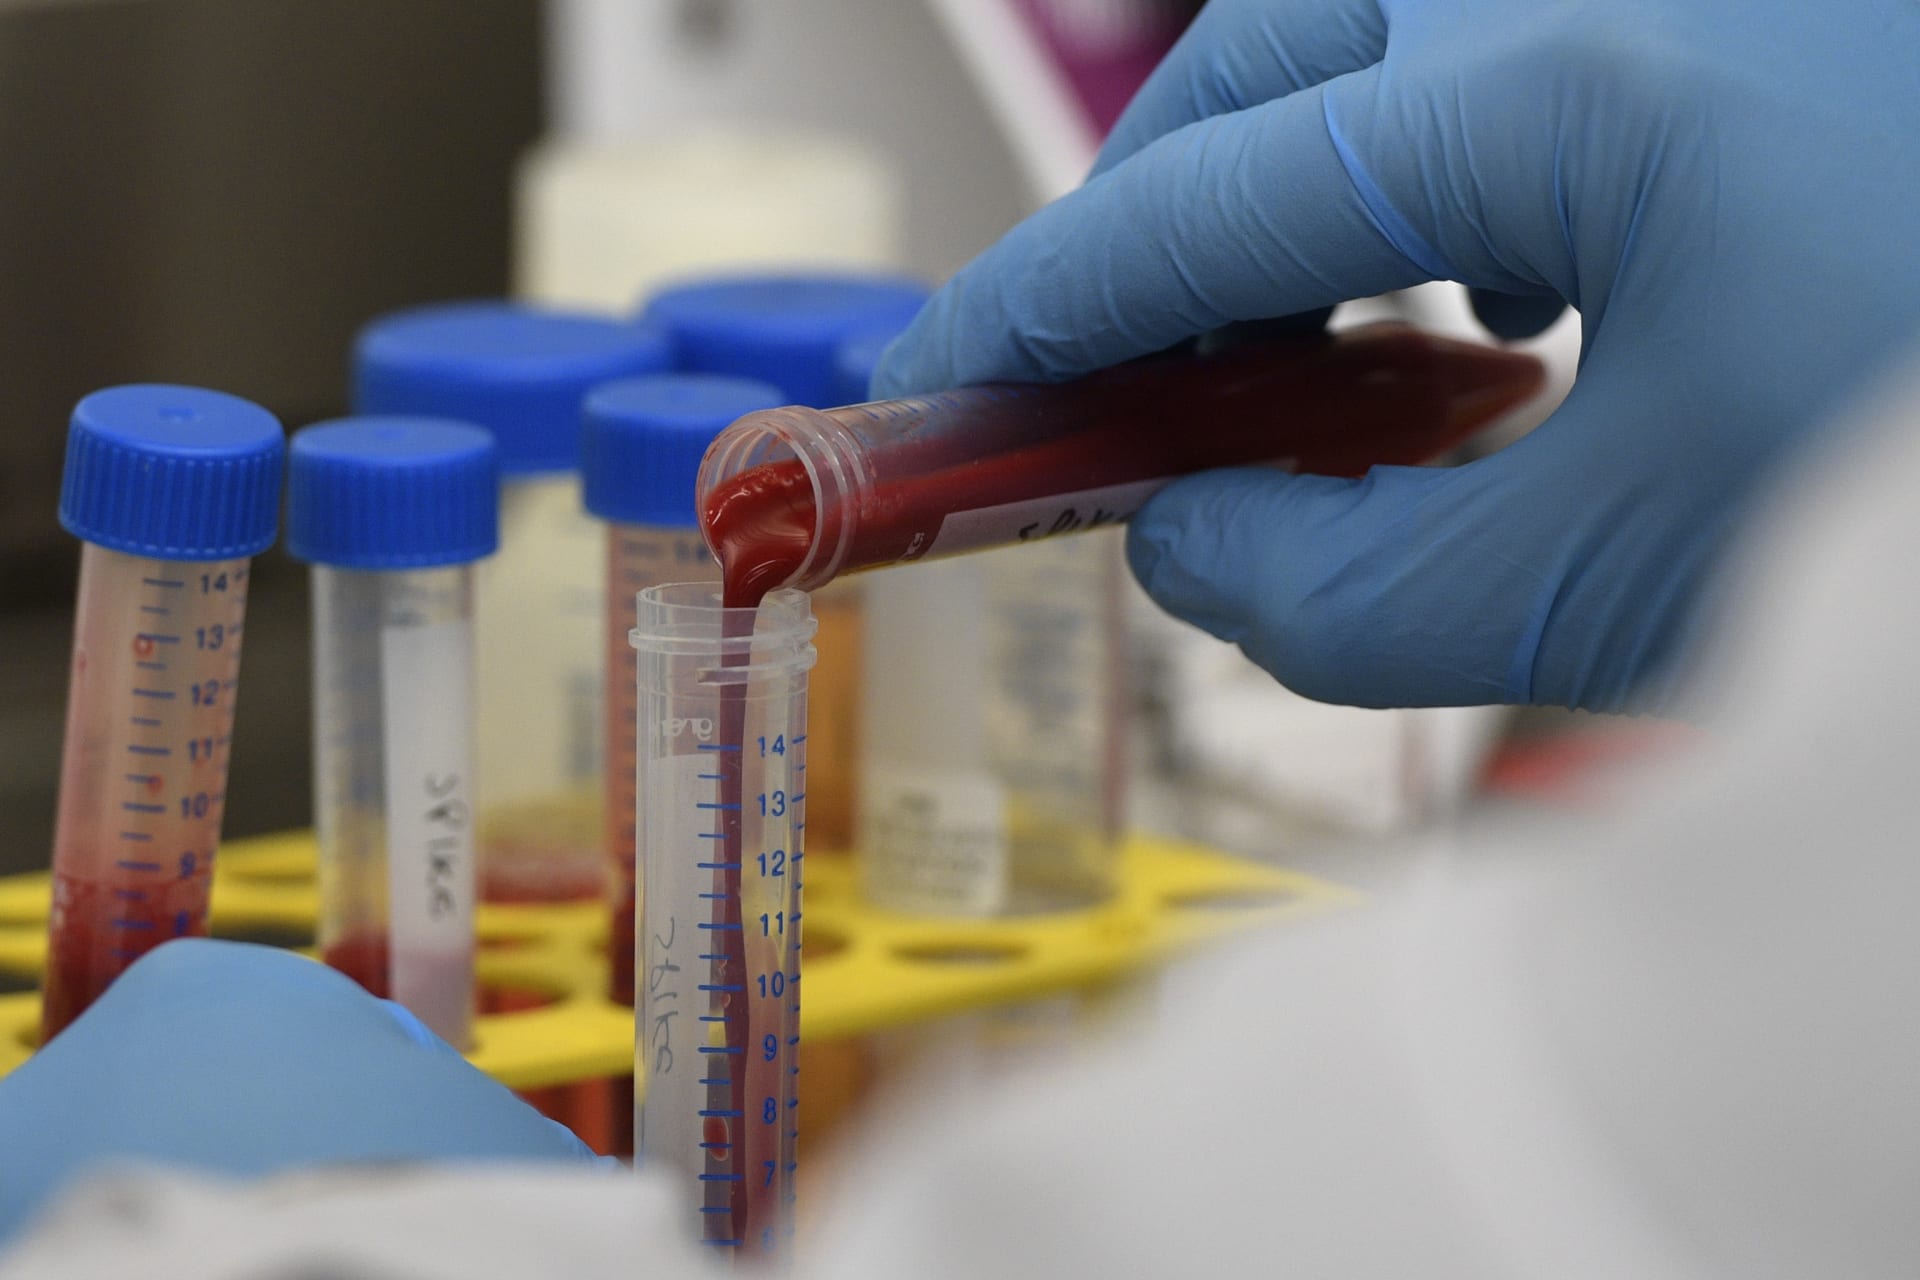 دراسة: ملعقتان صغيرتان من دم مصنّع مخبريًا قد تضعان حدًا لأمراض الدم النادرة